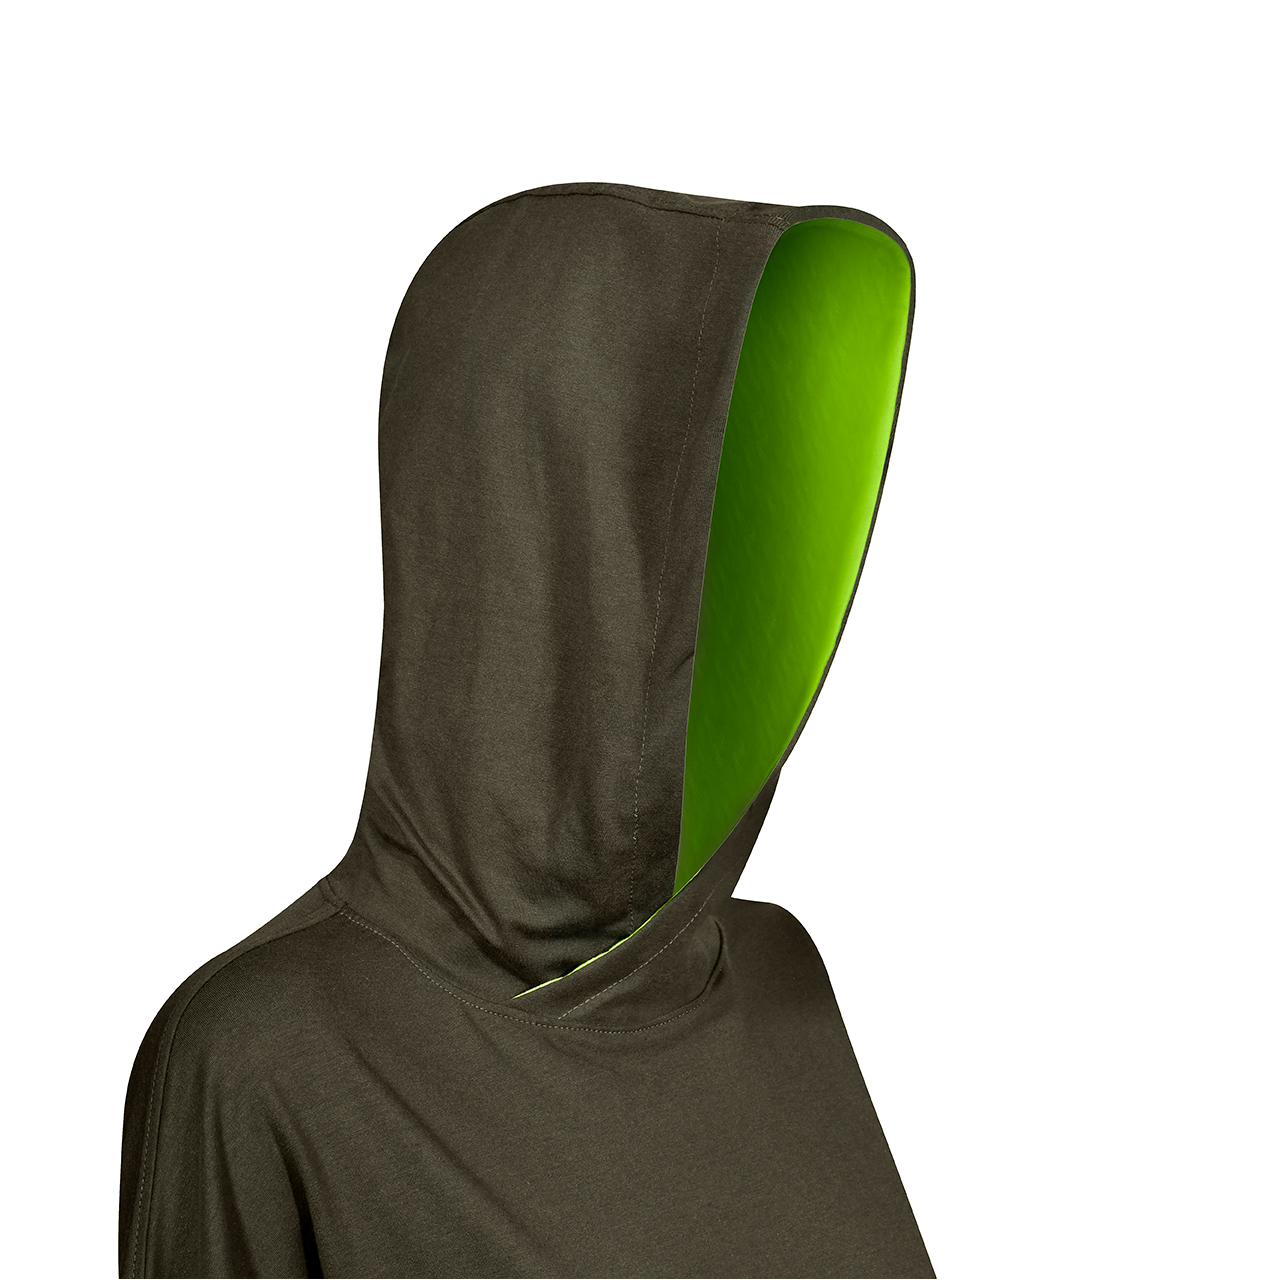 هودی زنانه ساروک مدل HZS01 رنگ سبز تیره -  - 2